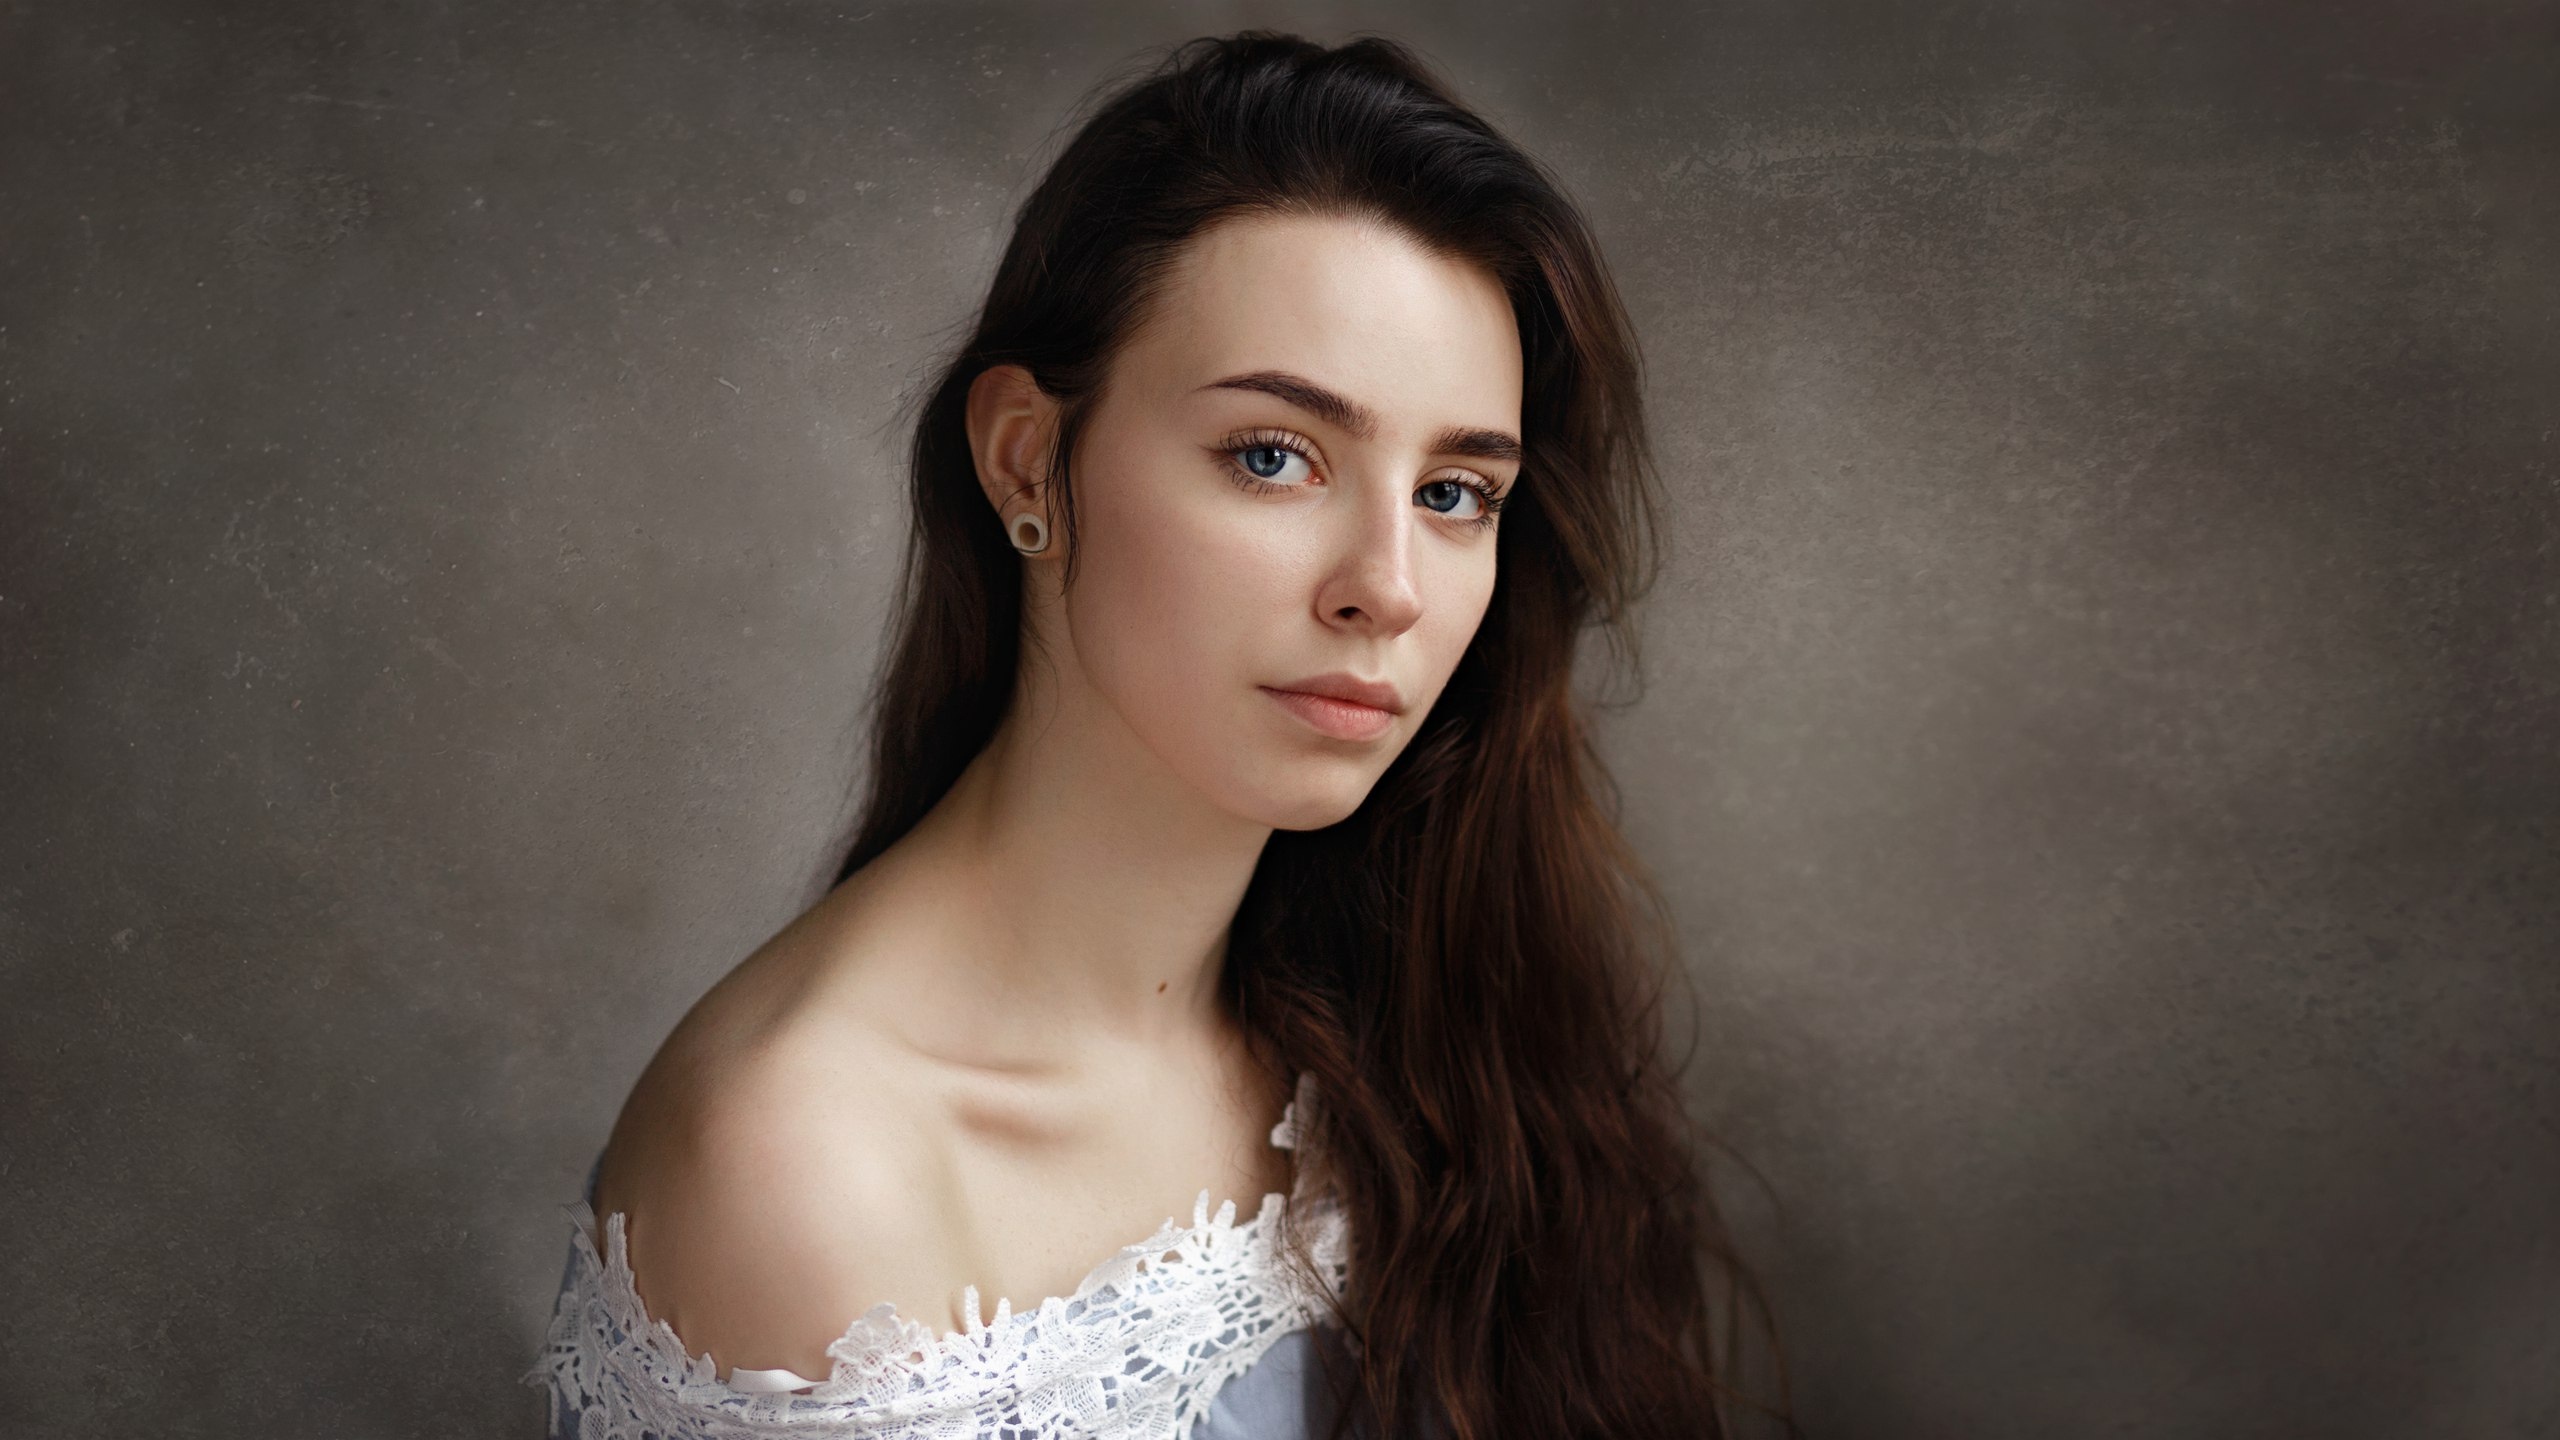 Alexey Kishechkin Women Brunette Long Hair Blue Eyes Bare Shoulders Earring Simple Background Portra 2560x1440